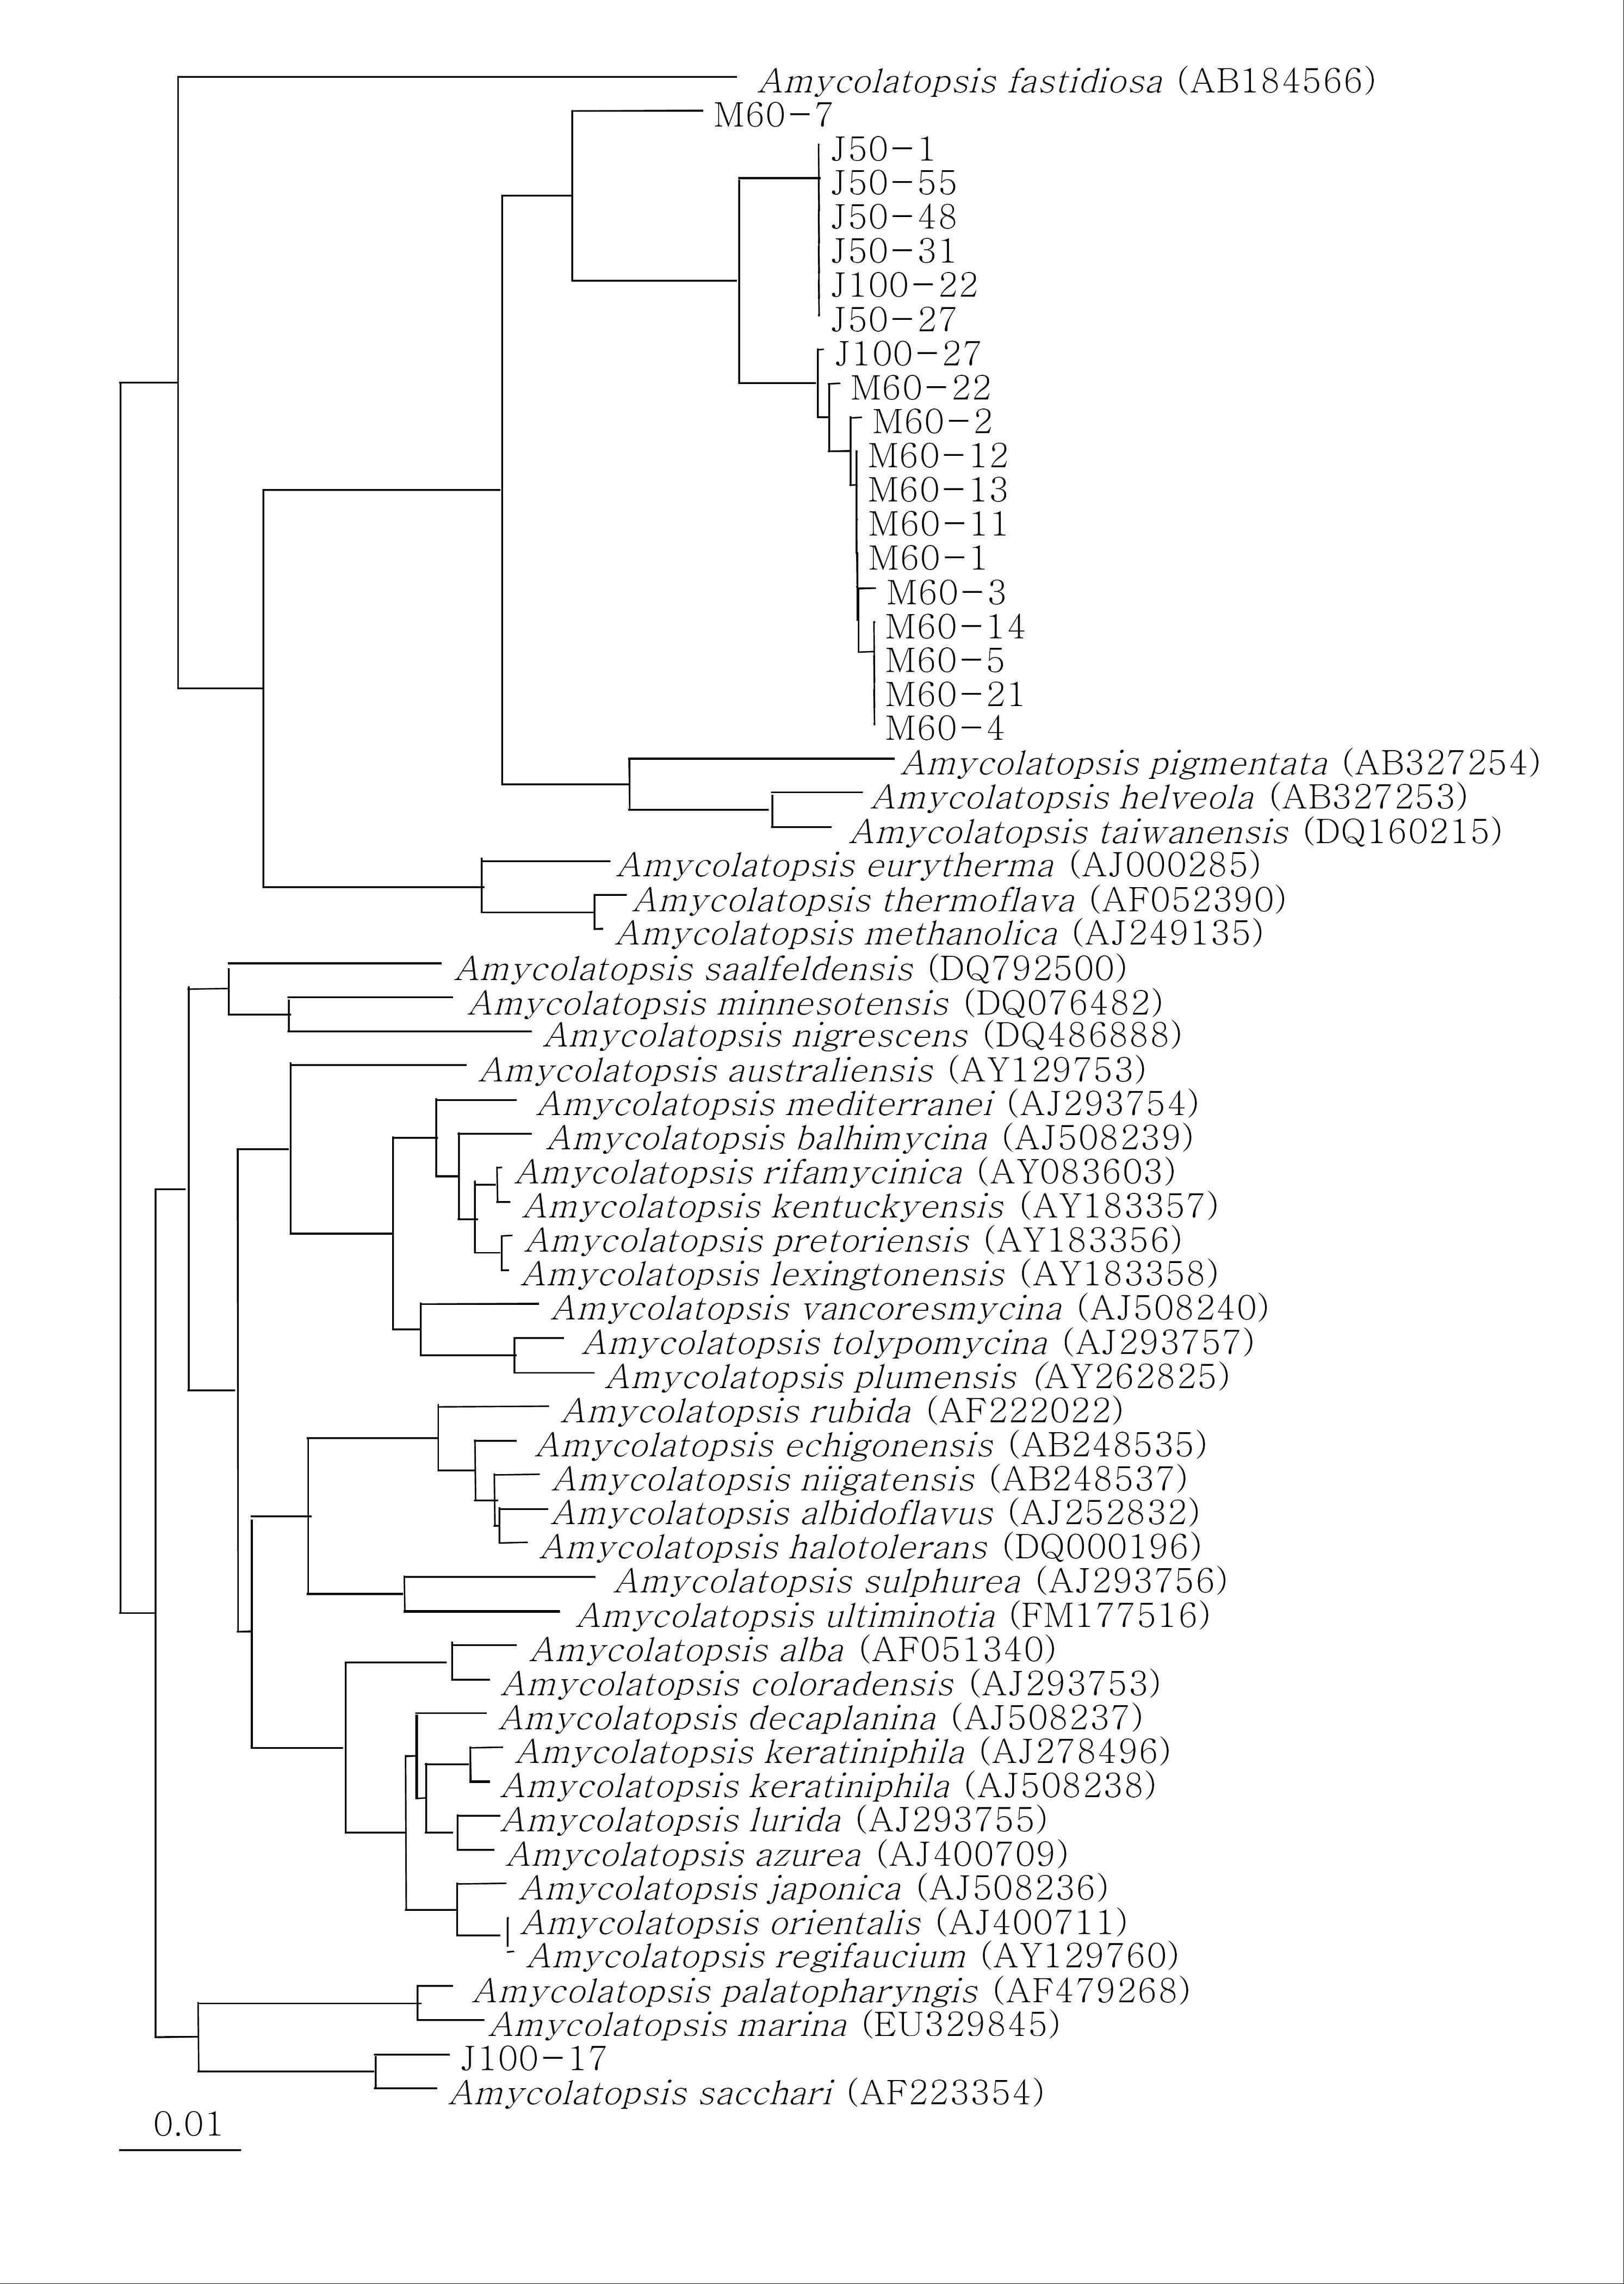 발효된 참나무 톱밥에 서식하는 Amycolatopsis 속의 phylogenetic tree J50, J100 : 2009년도 발효 톱밥 내부 50 cm와 1 m 시료의 클론, M60 : 2010년도 발효 톱밥 내부 60 cm 시료의 클론, outgroup: Actinosynnema mirum (AF328679). Jukes & Cantor 방법과 neighbor-joining 방법에 의해 염기서열간의 진화적 거리와 계통도를 계산 하였다.